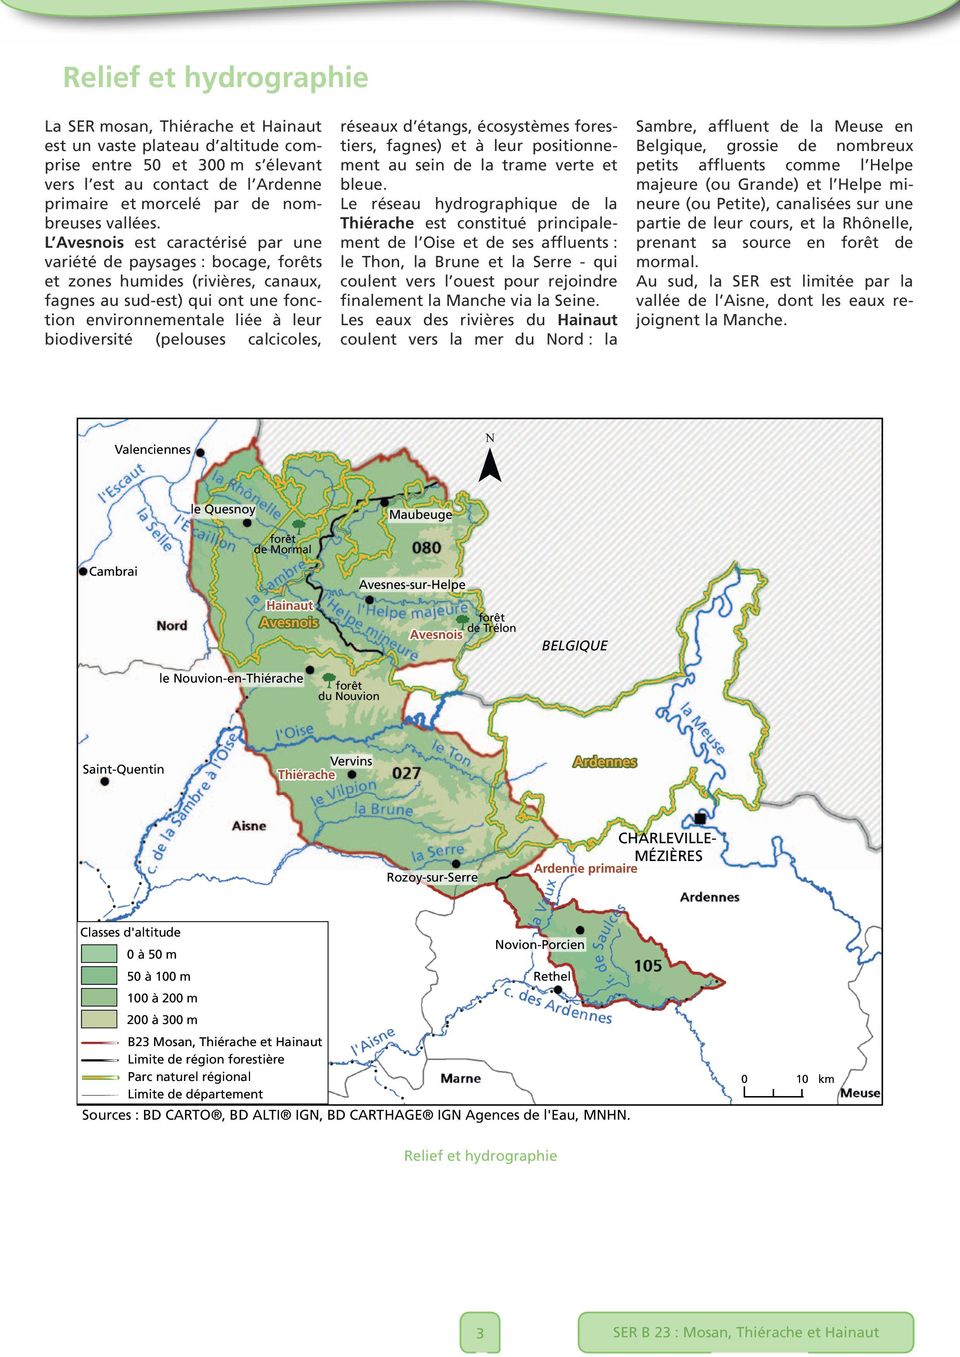 L Avesnois est caractérisé par une variété de paysages : bocage, forêts et zones humides (rivières, canaux, fagnes au sud-est) qui ont une fonction environnementale liée à leur biodiversité (pelouses